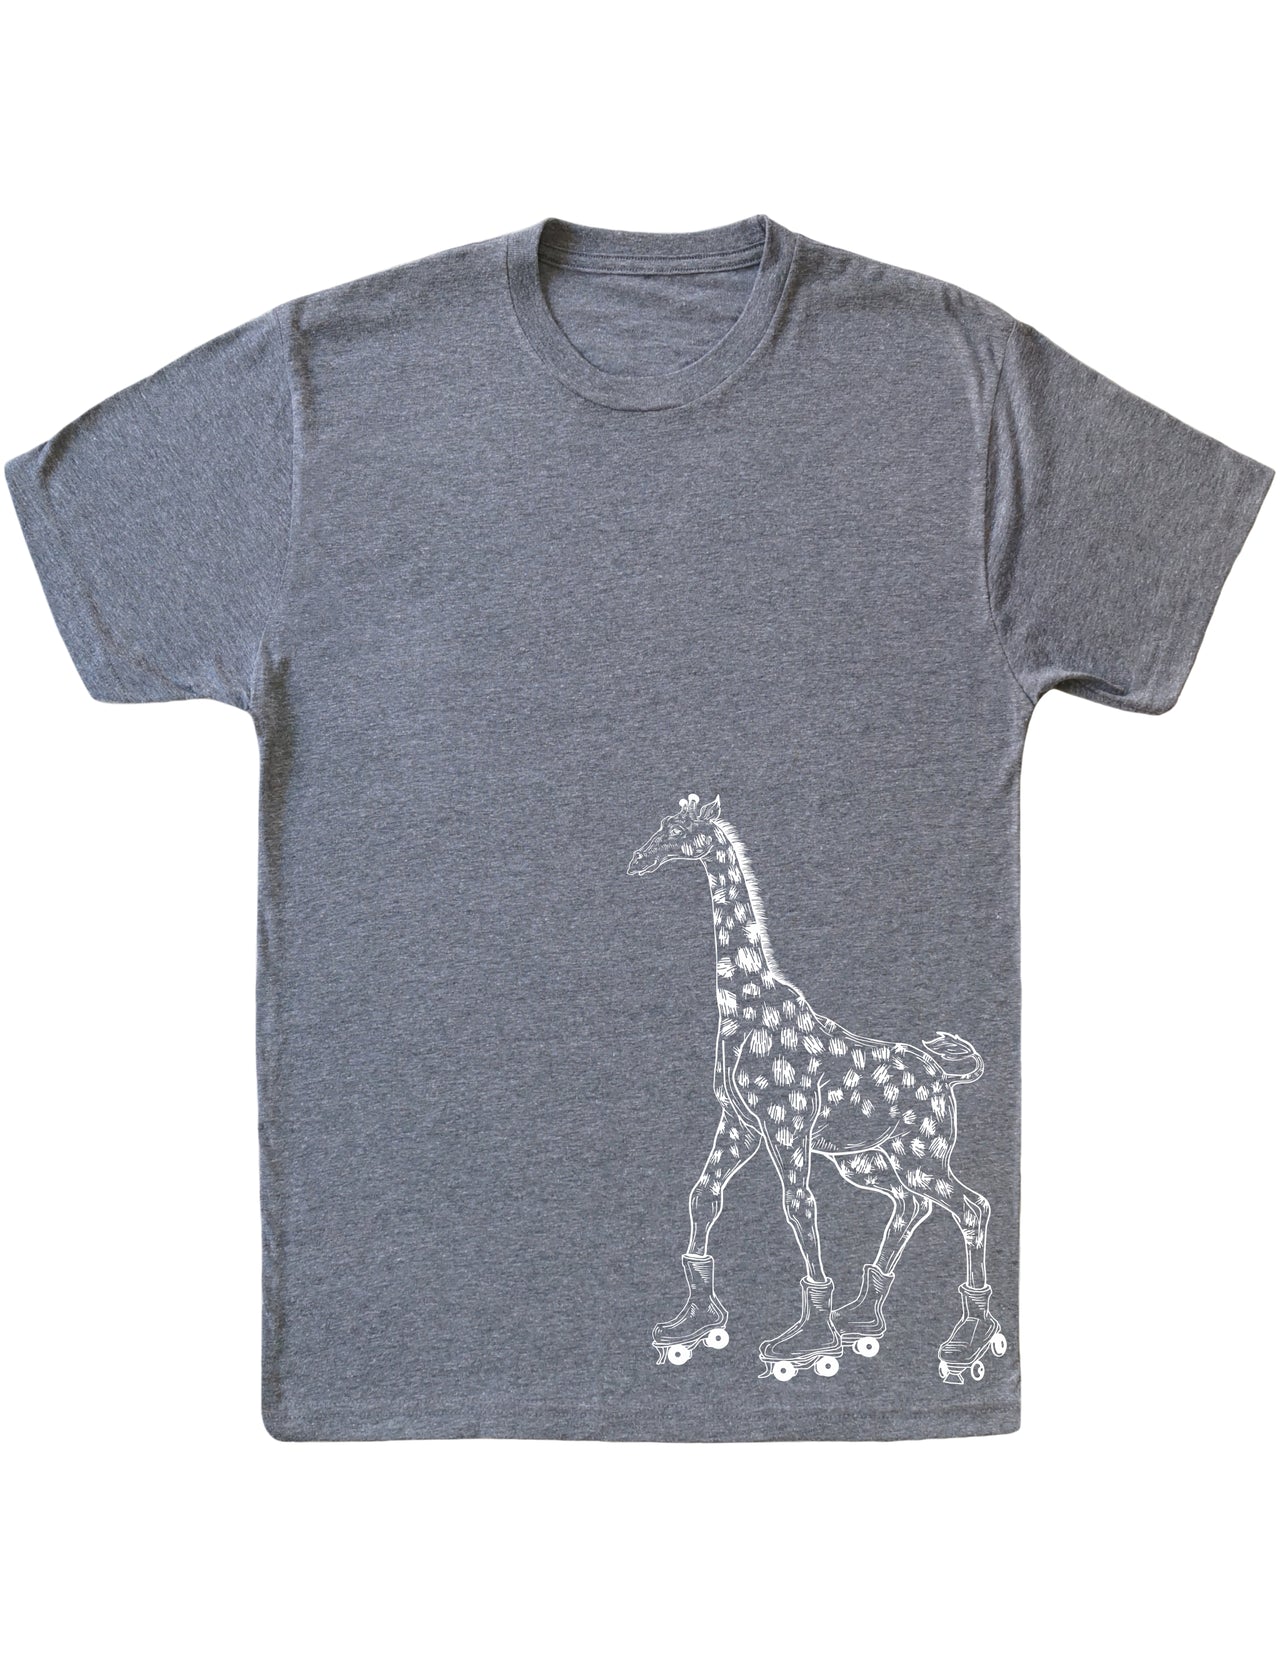 seembo-giraffe-roller-skater-skating-art-men-vintage-grey-t-shirt-printed-on-side